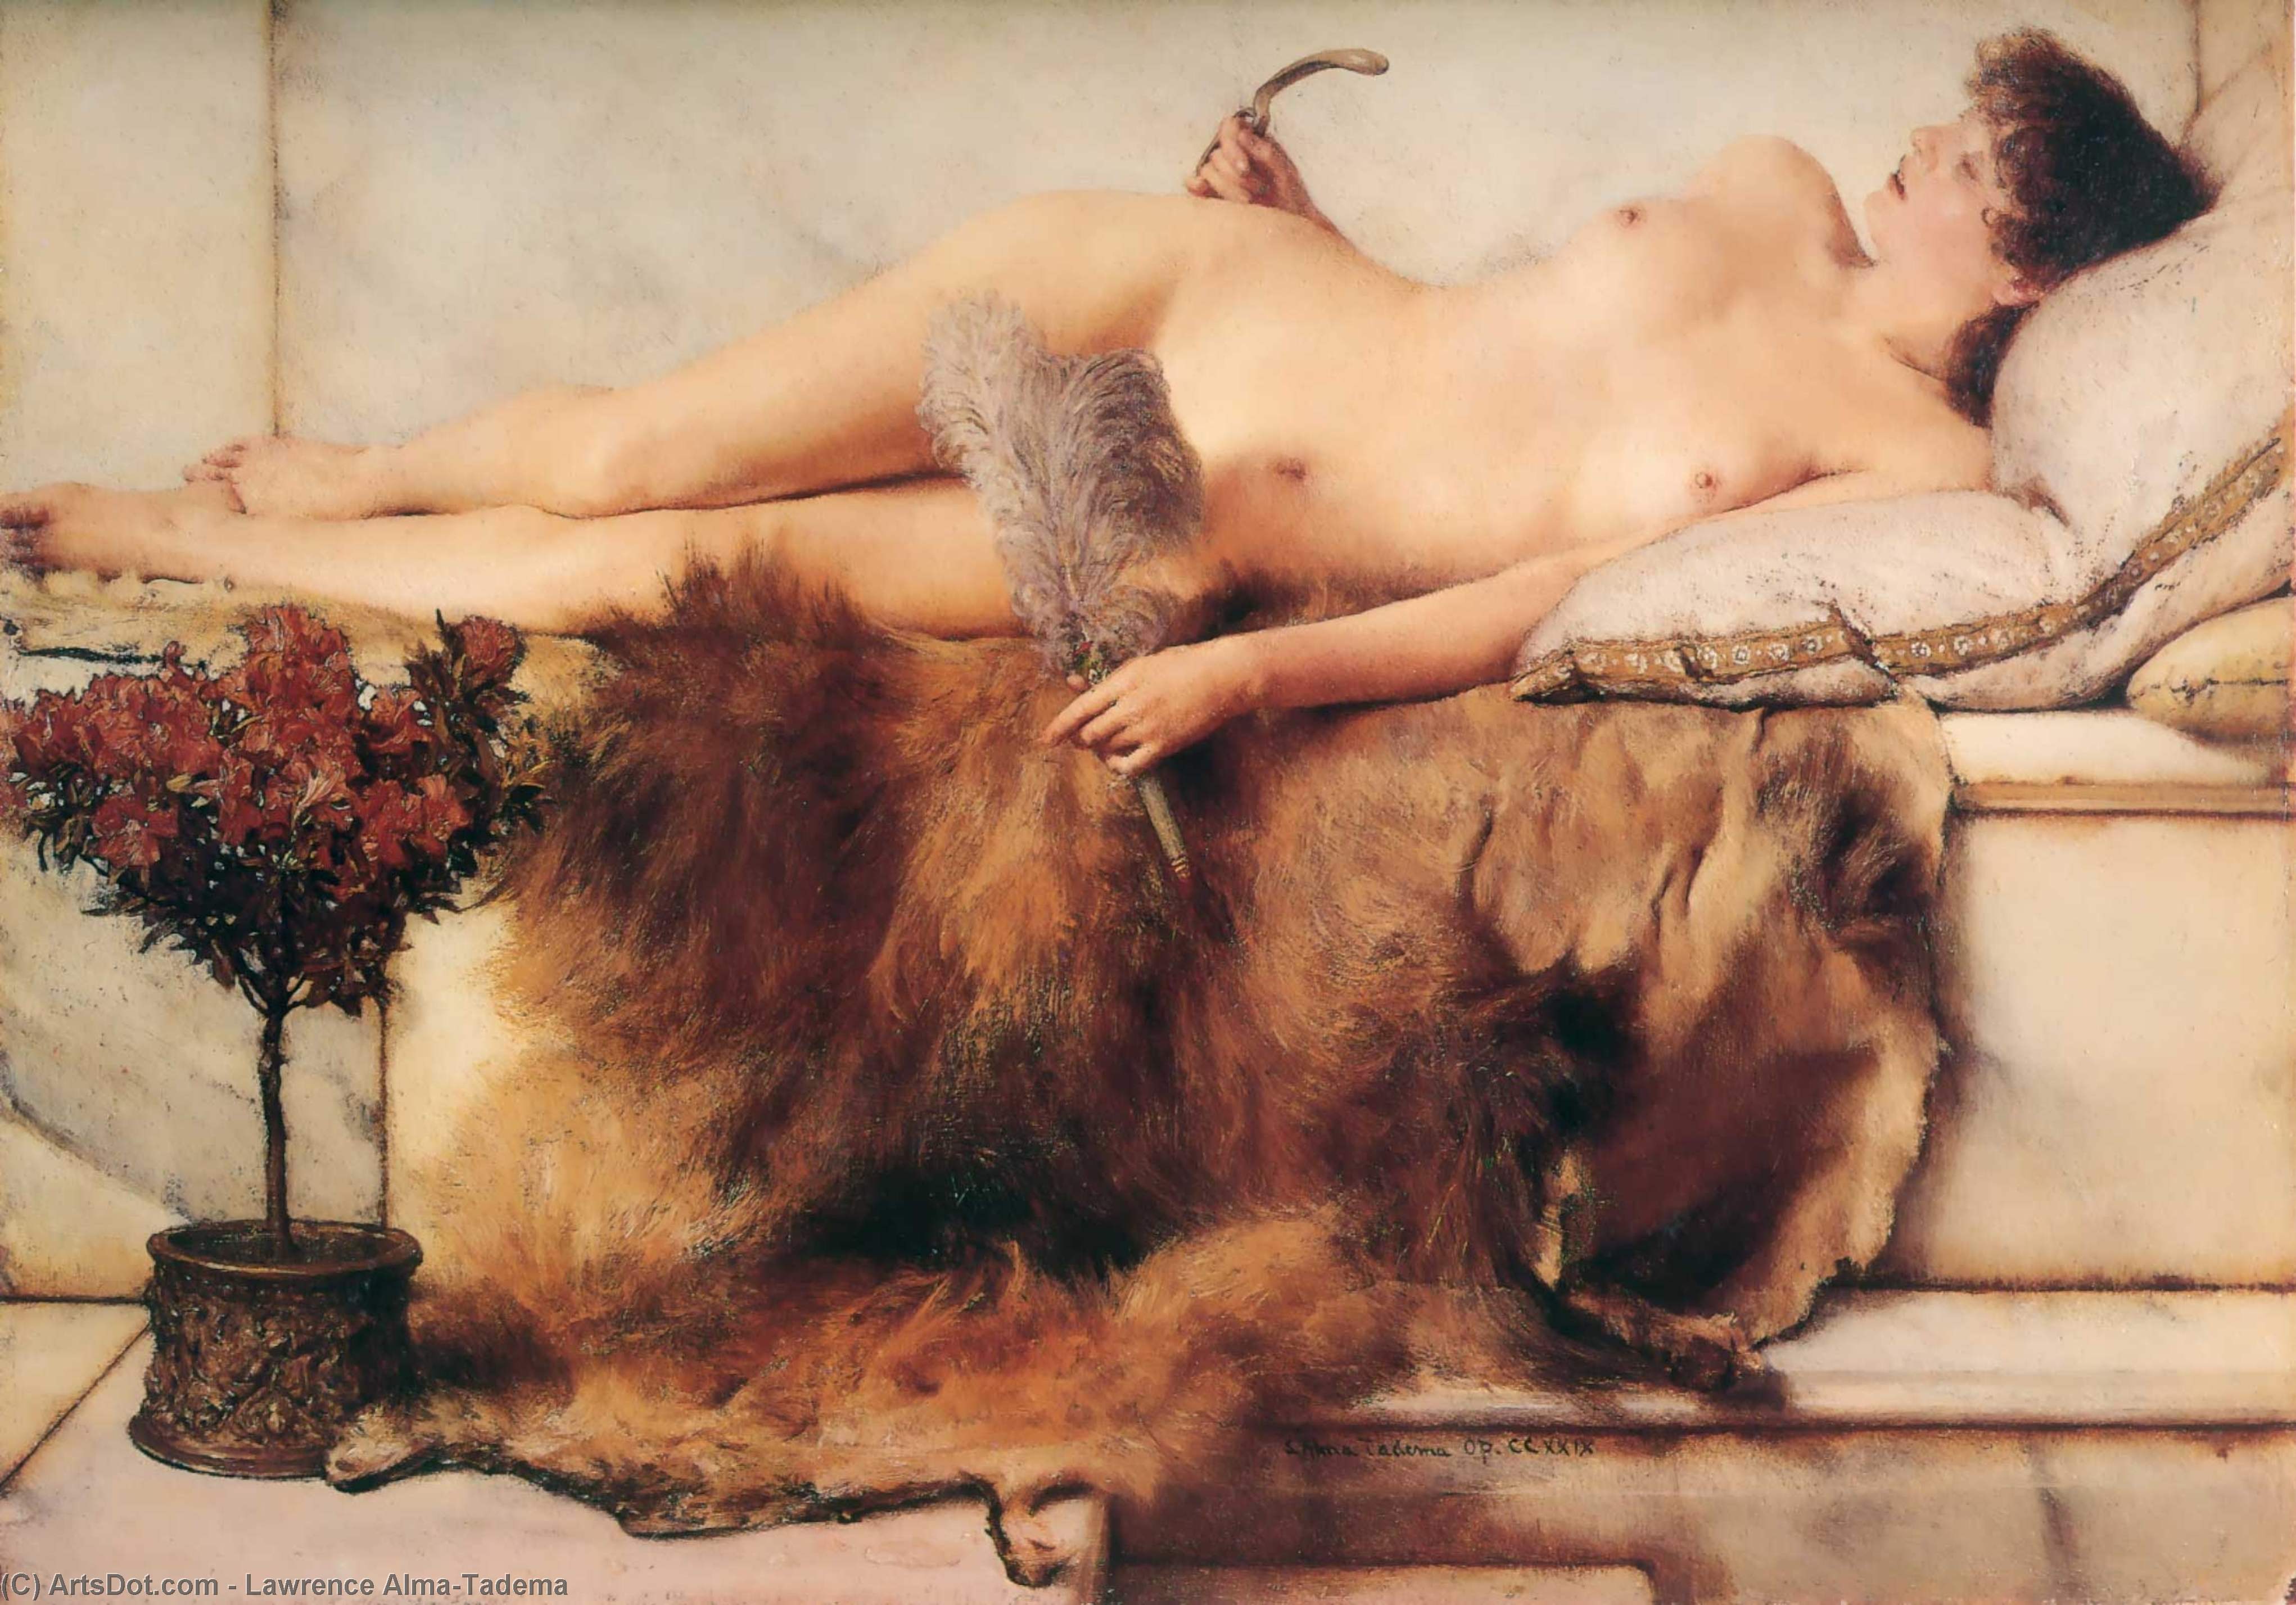 WikiOO.org - Εγκυκλοπαίδεια Καλών Τεχνών - Ζωγραφική, έργα τέχνης Lawrence Alma-Tadema - In the Tepidarium